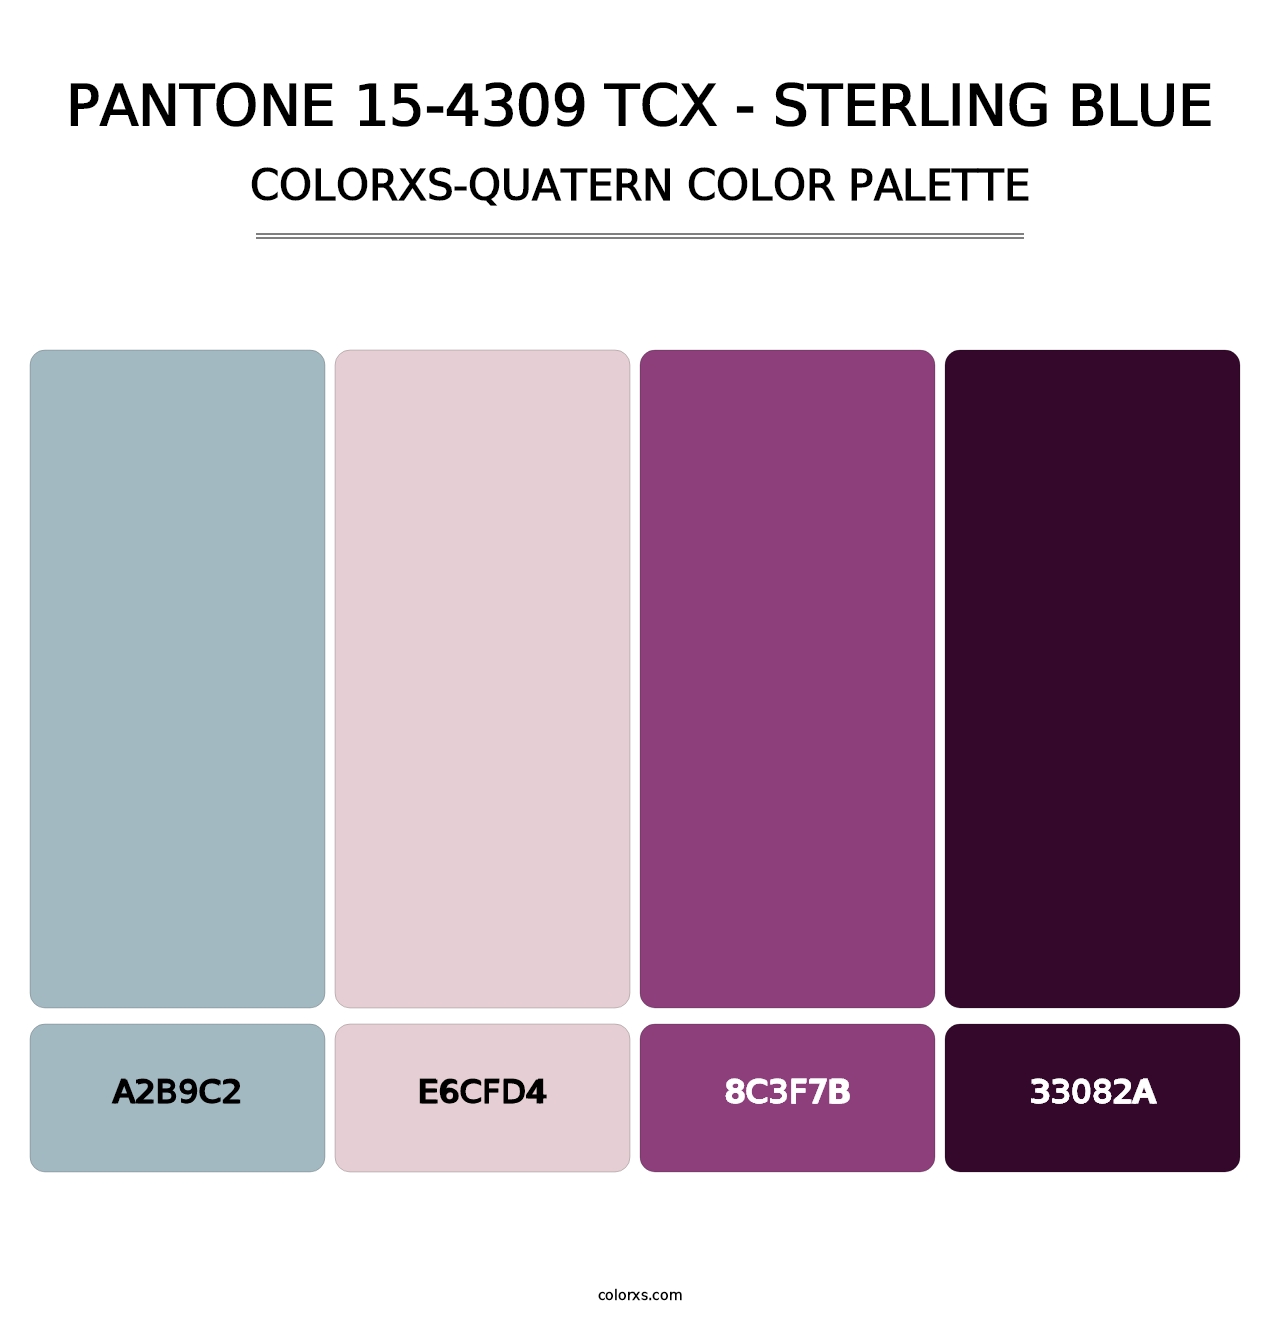 PANTONE 15-4309 TCX - Sterling Blue - Colorxs Quatern Palette